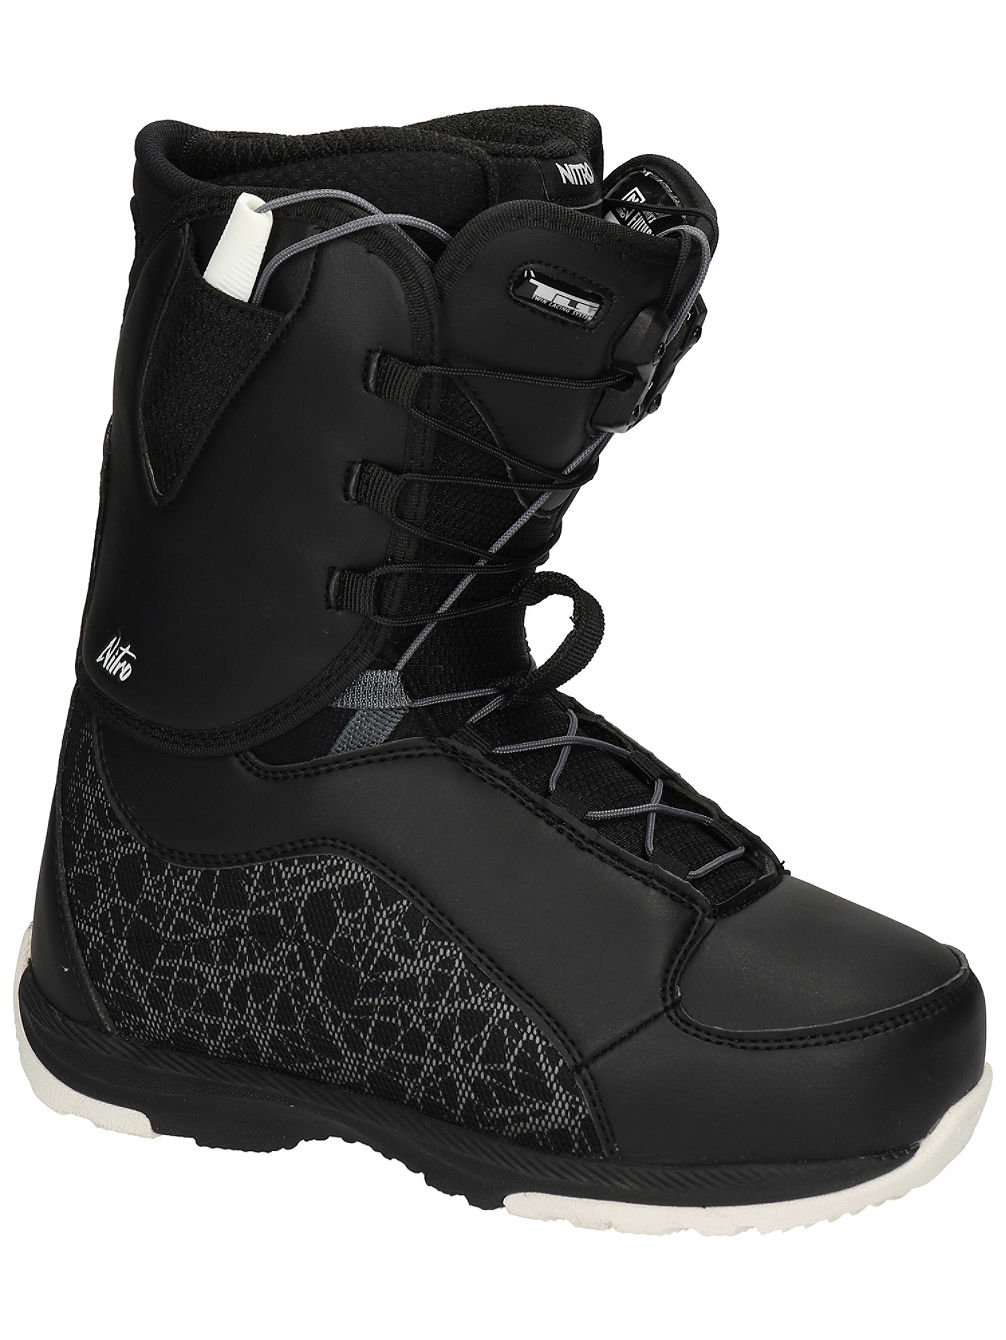 Futura TLS Snowboard Boots